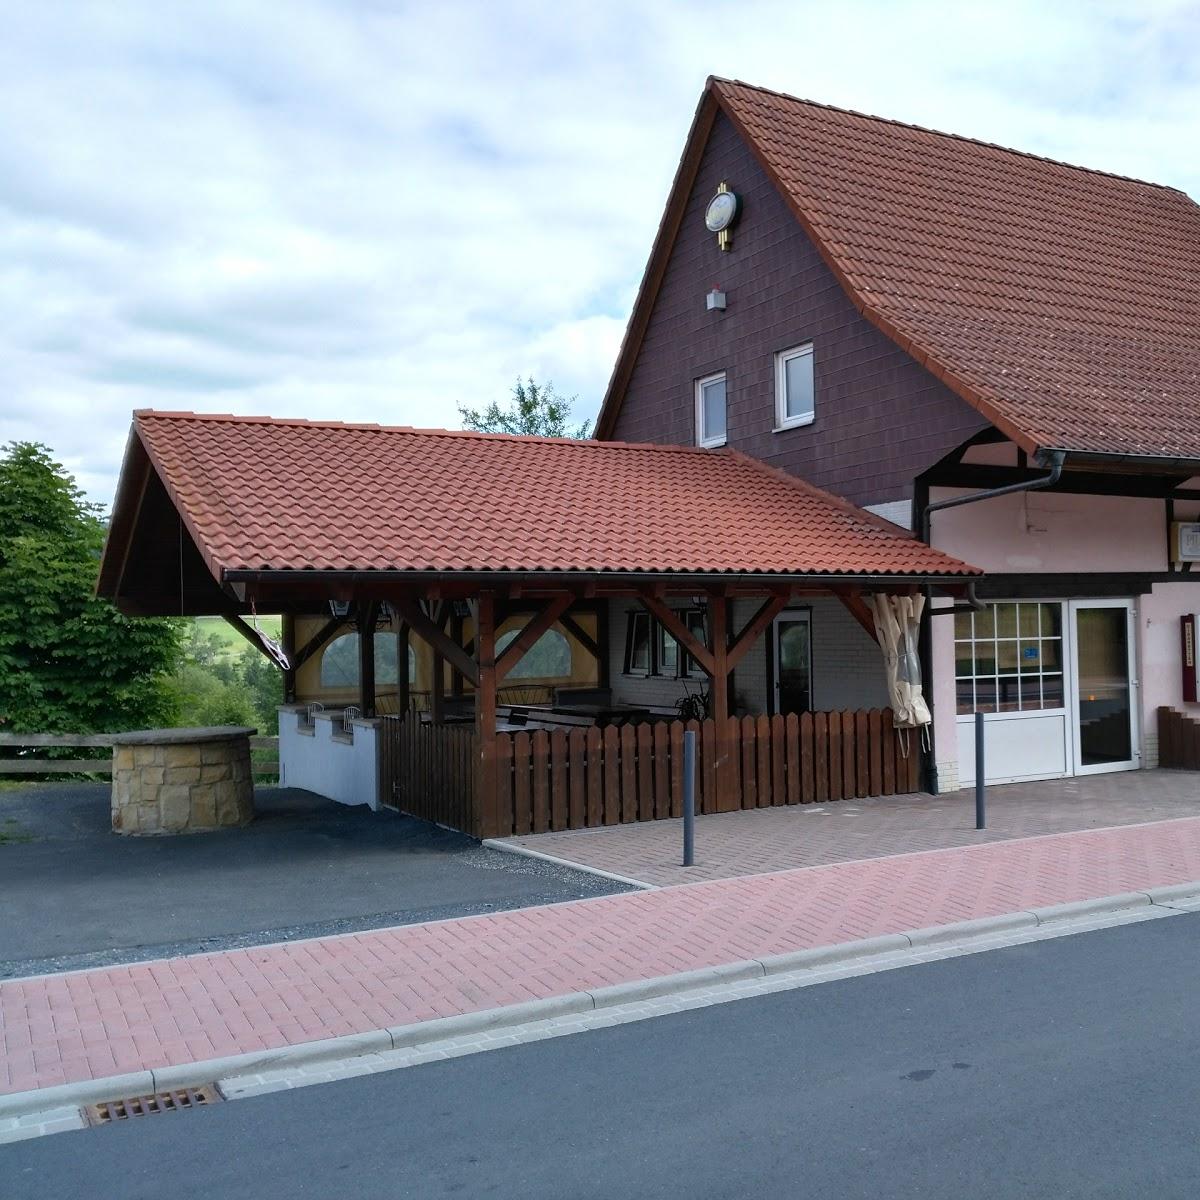 Restaurant "S. Kleinhenz" in  Ebersburg